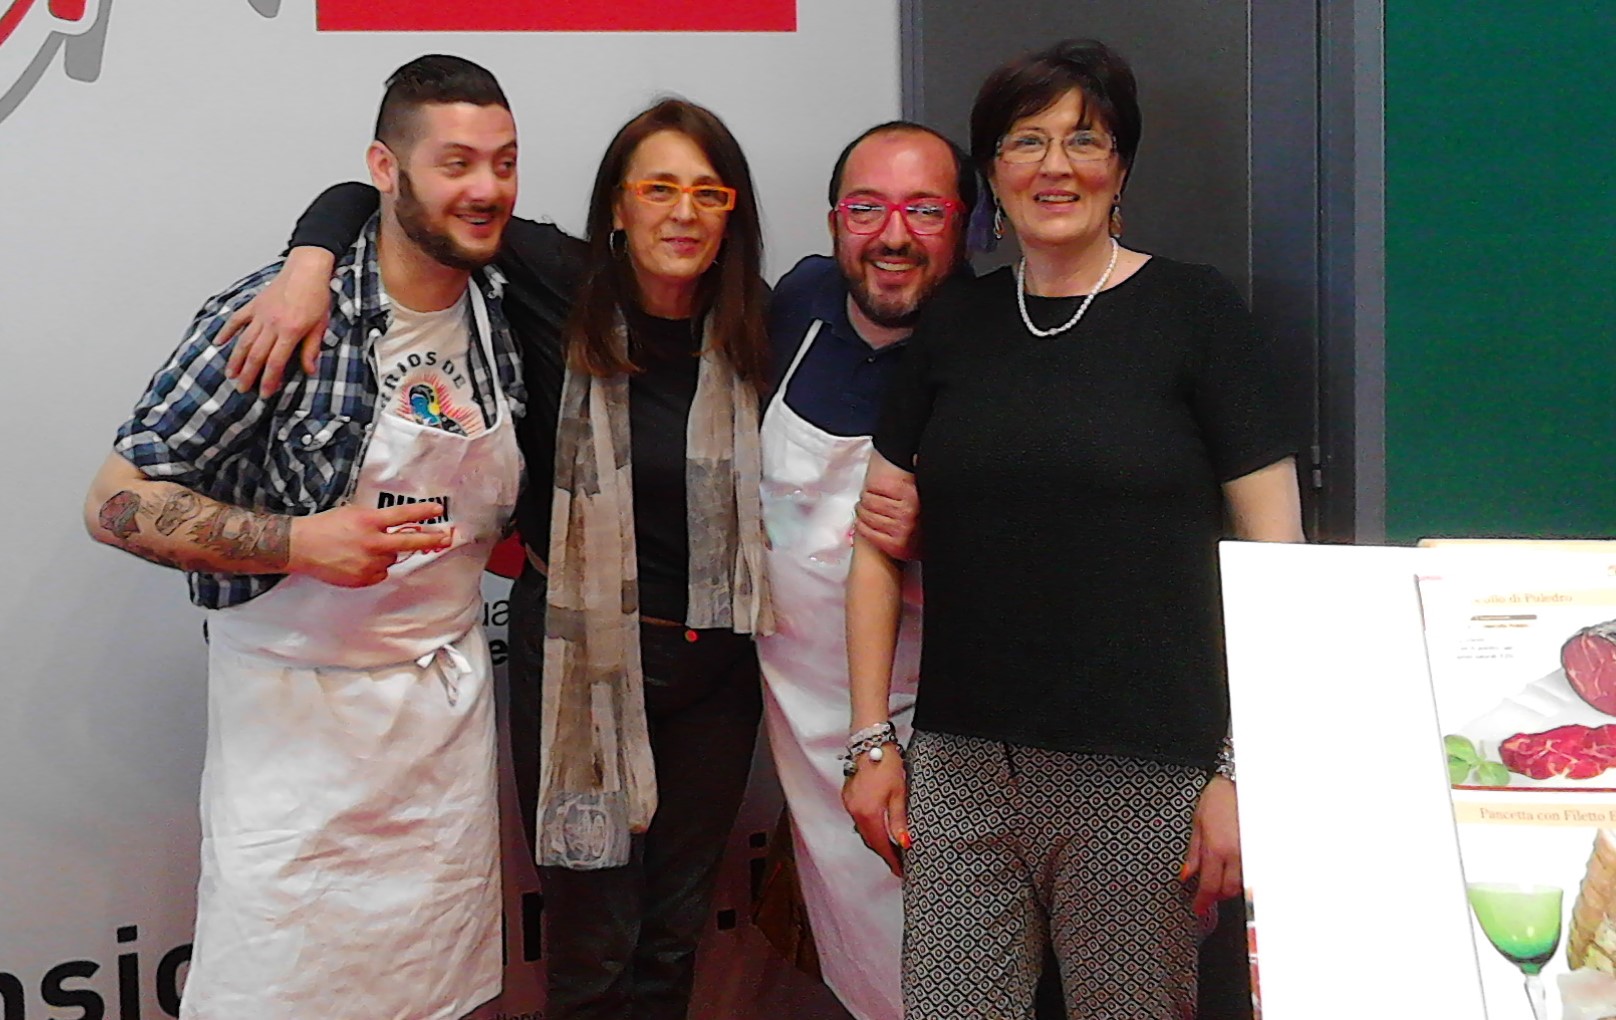 Fiera Verona 2015 con il Conte di Master Chef